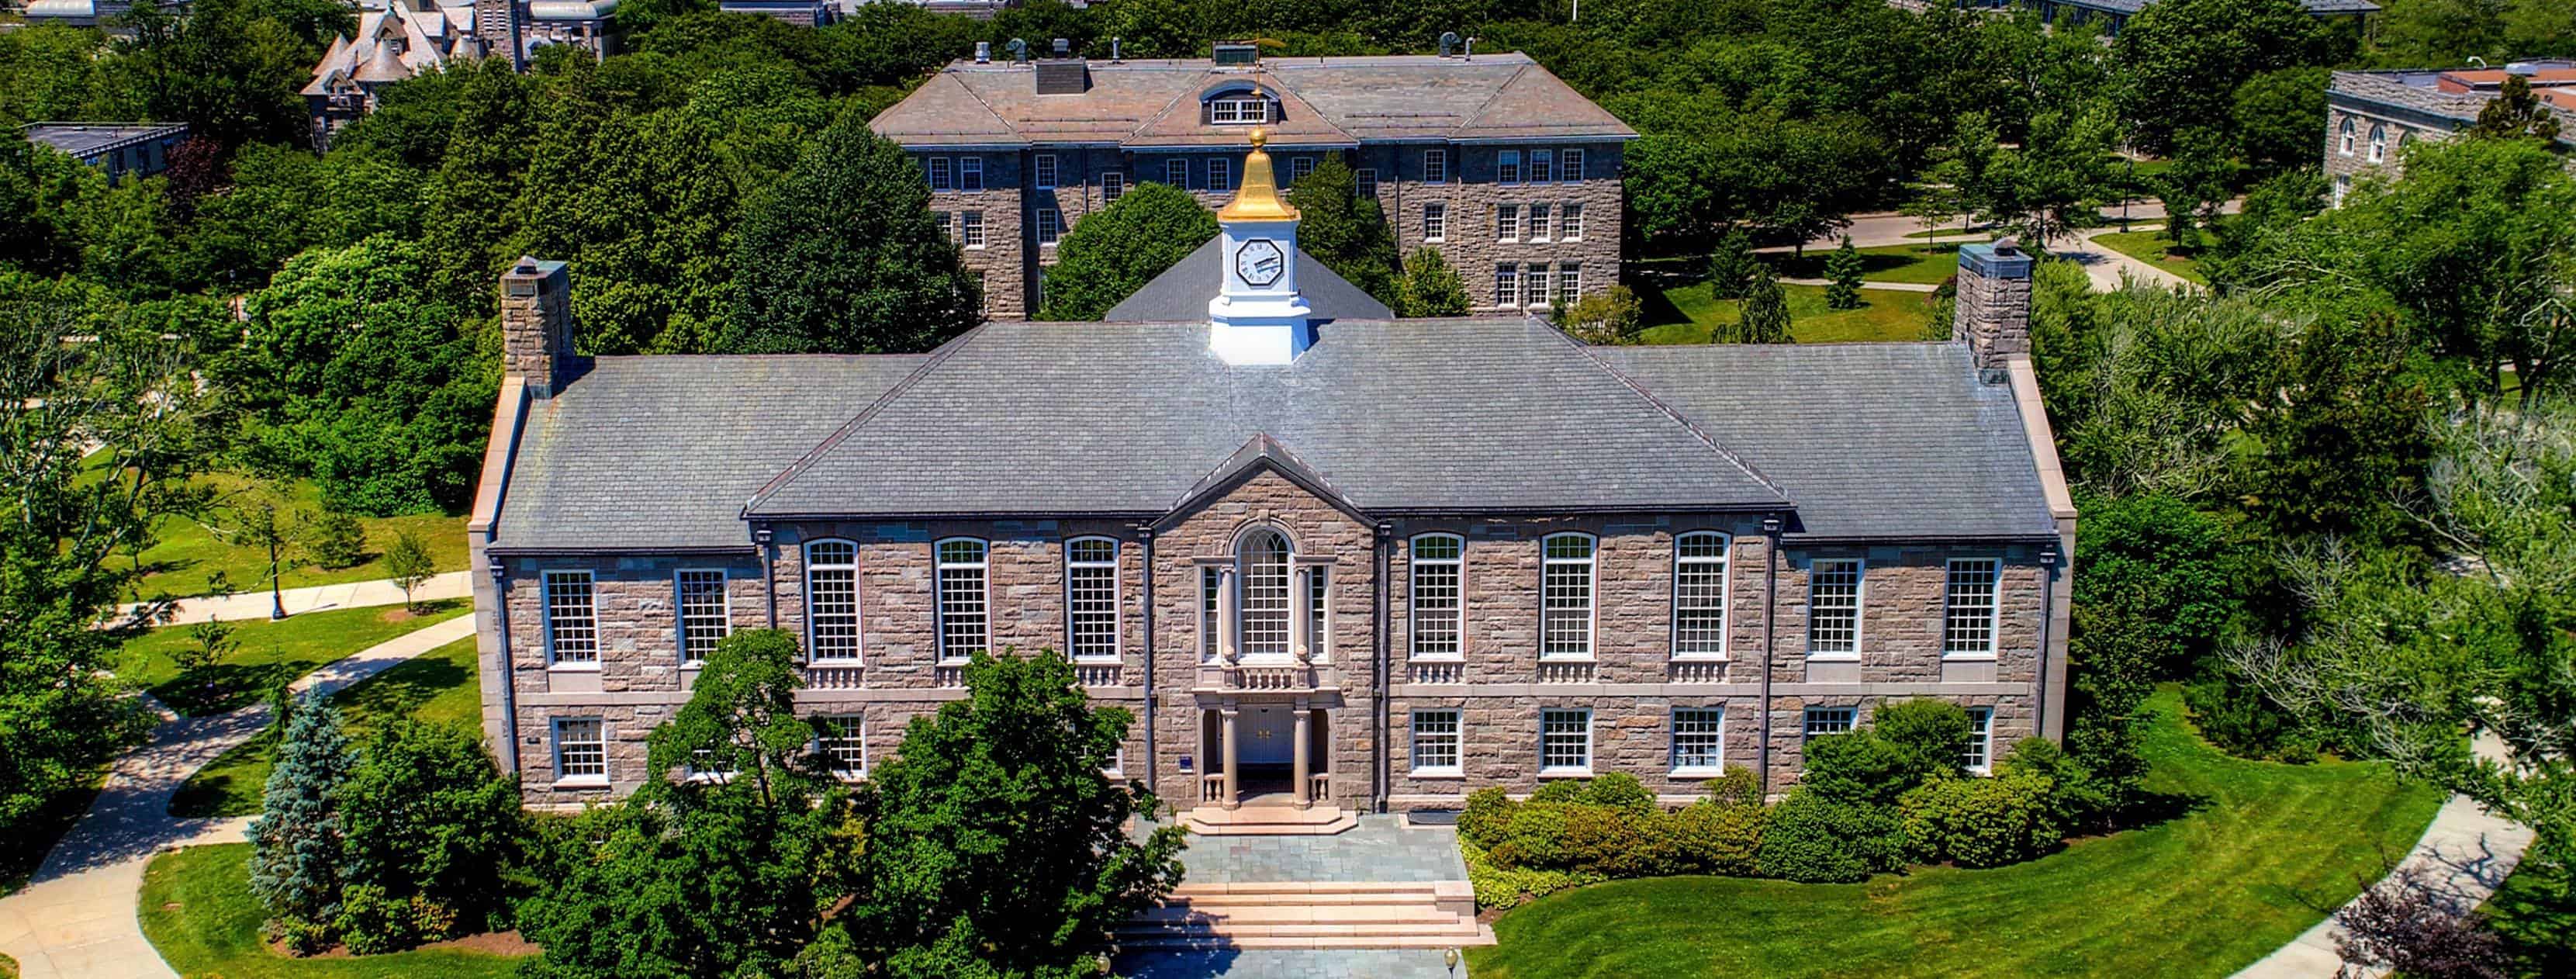 Best Colleges & Universities in Rhode Island | Top Consensus Ranked Schools  in Rhode Island 2021